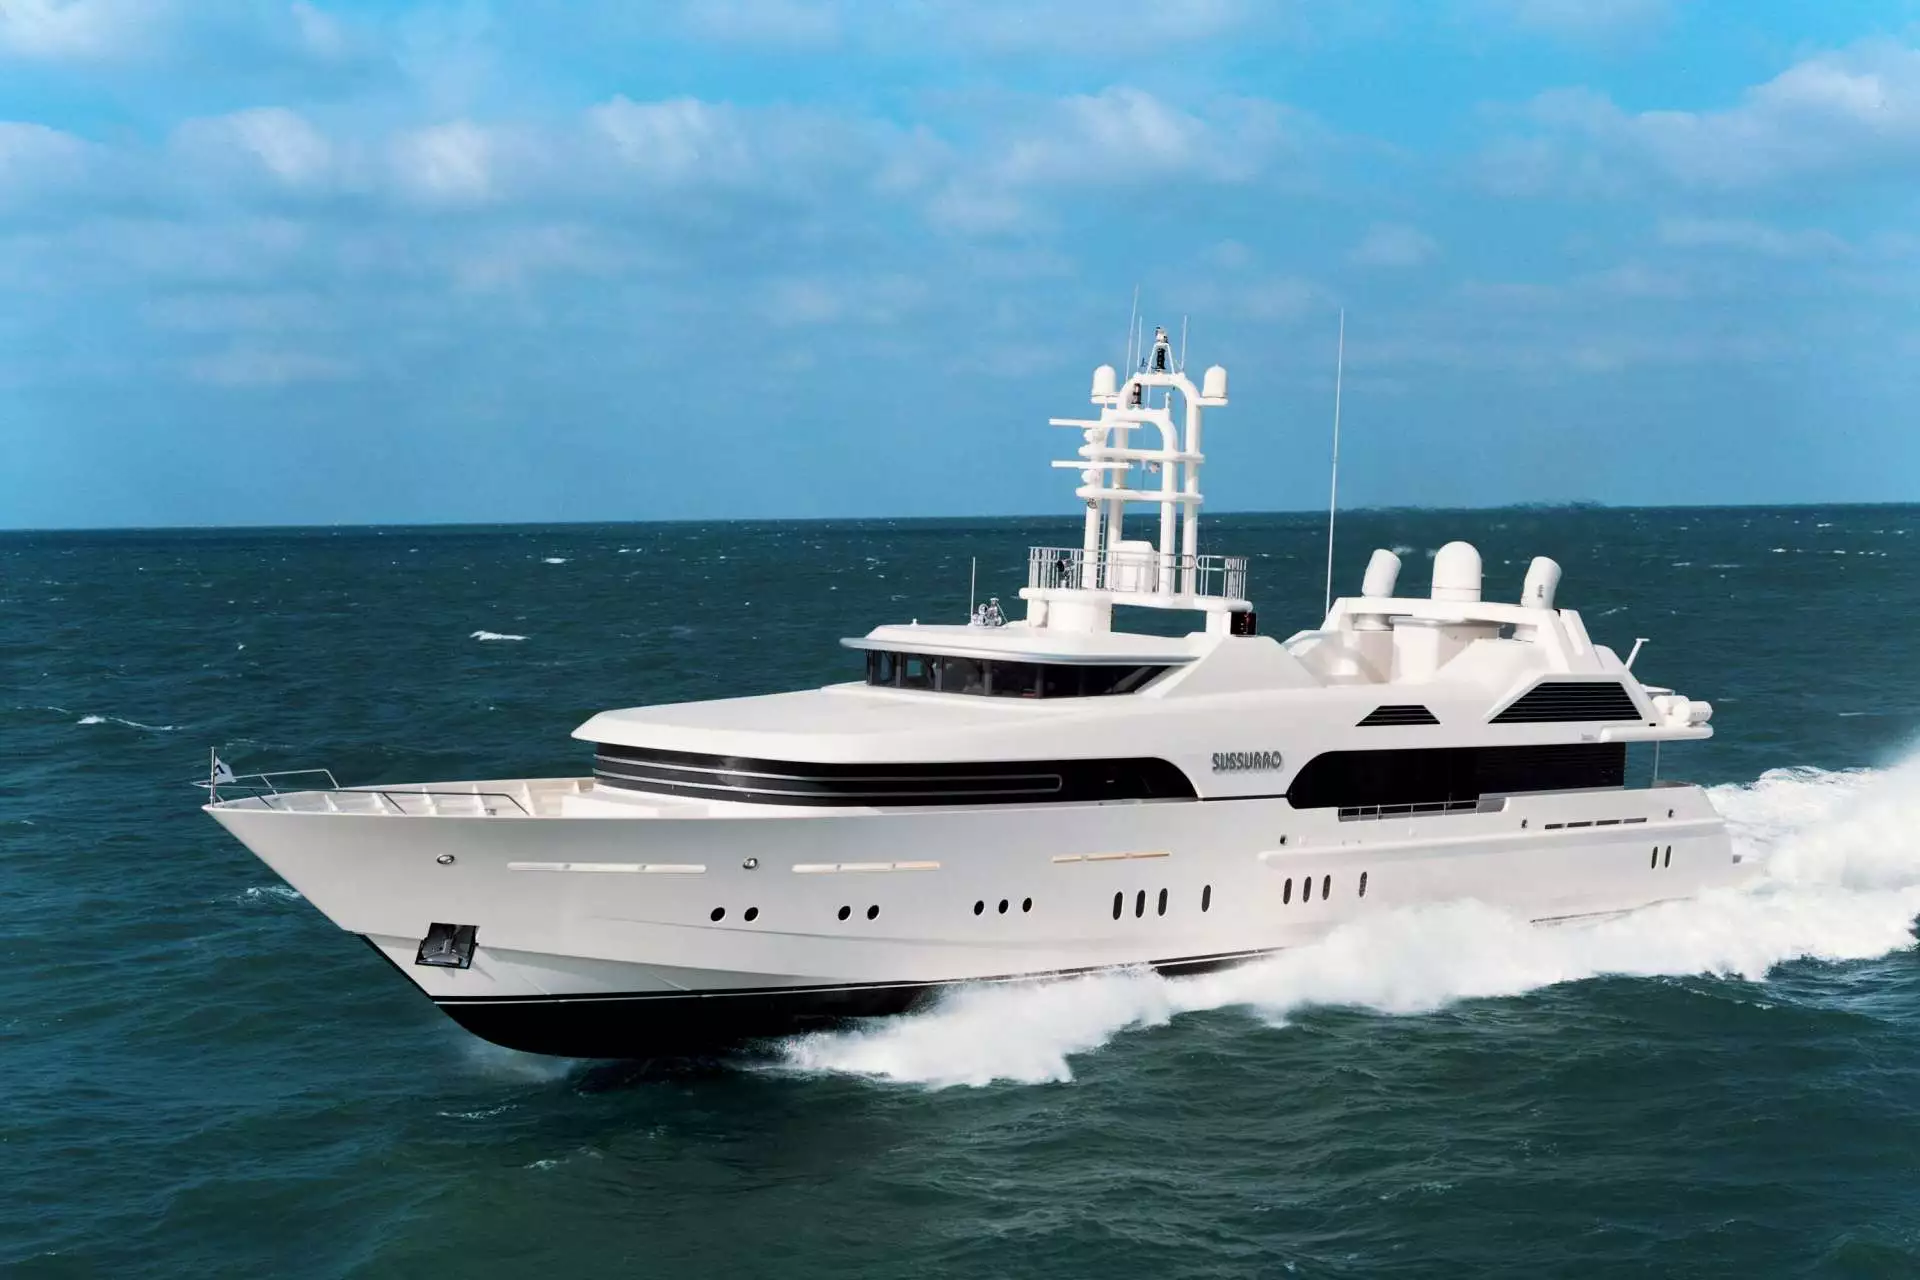 Yacht SUSSURRO • Irina Malandina $25M Superyacht